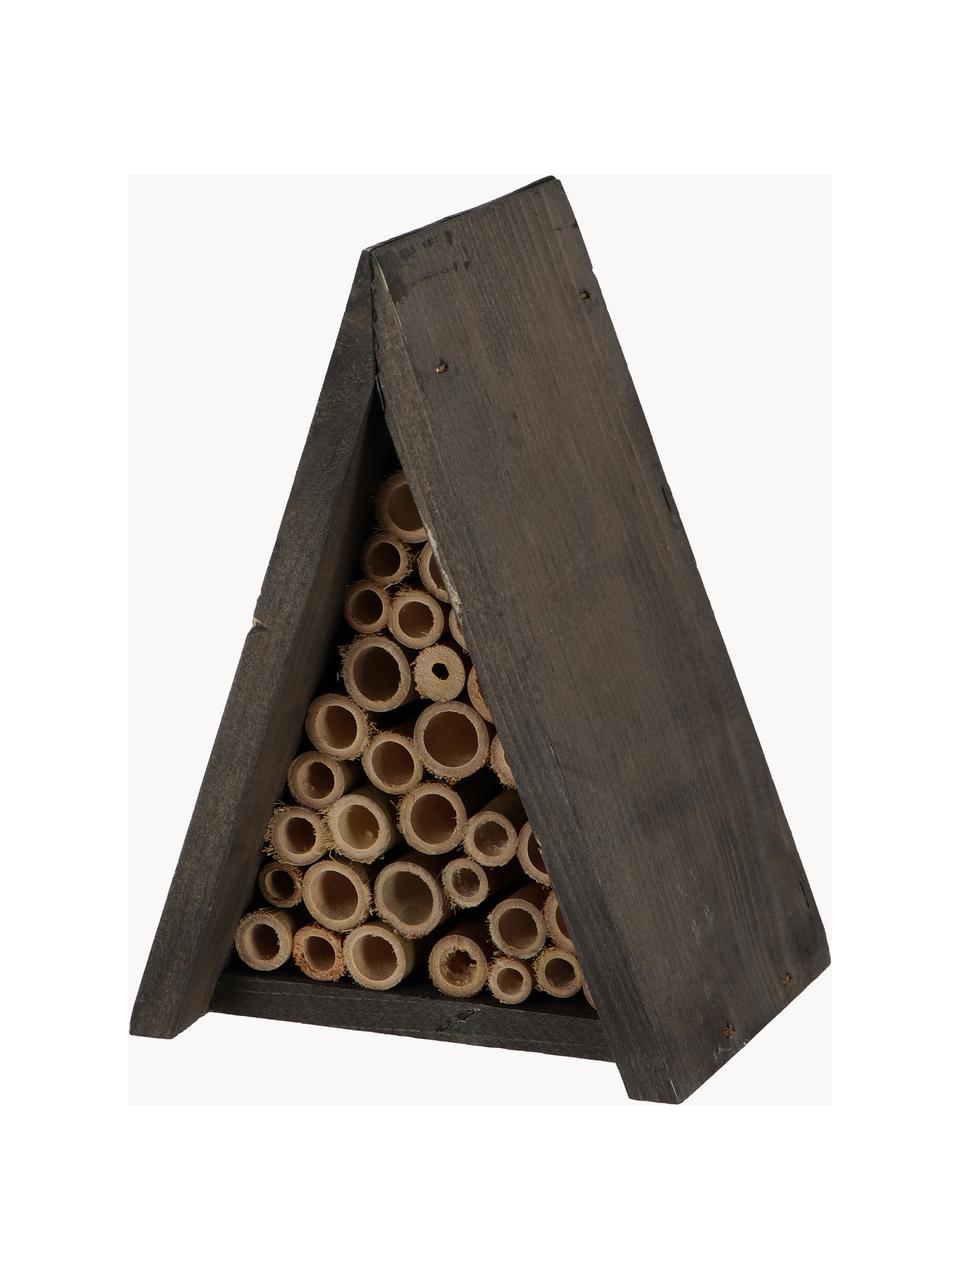 Včelí domek Wigwam, Černá, hnědá, Š 15 cm, V 20 cm